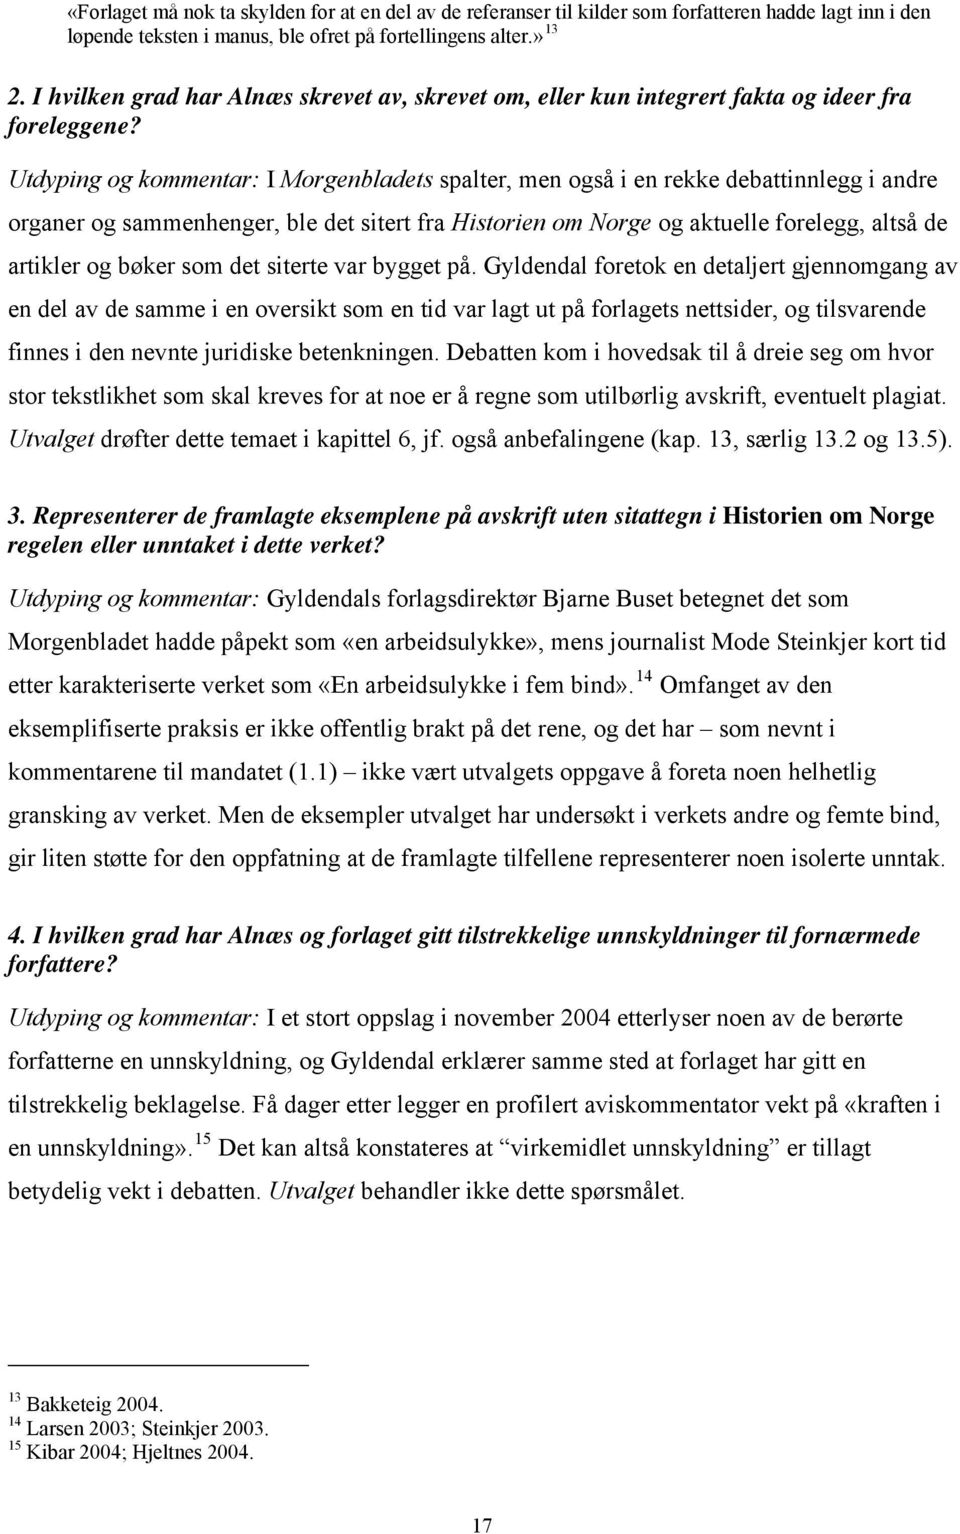 Utdyping og kommentar: I Morgenbladets spalter, men også i en rekke debattinnlegg i andre organer og sammenhenger, ble det sitert fra Historien om Norge og aktuelle forelegg, altså de artikler og